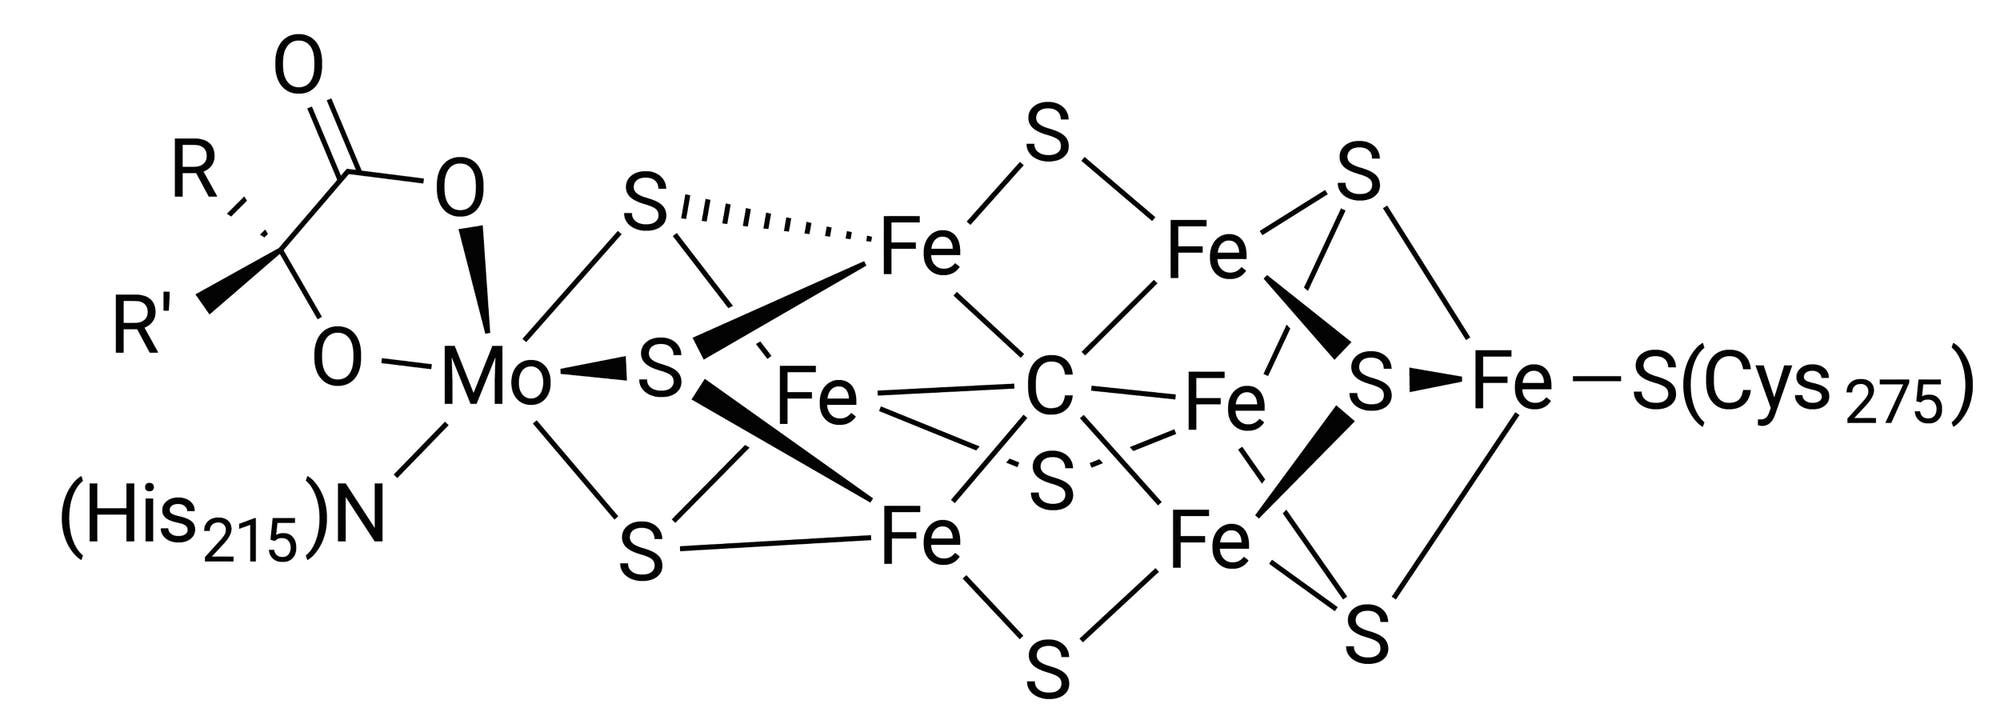 Strukturformel eines Nitrogenase-Kofaktors mit mehreren Eisenzentren, einem Molybdänzentrum sowie Schwefel- und Sauerstoffliganden